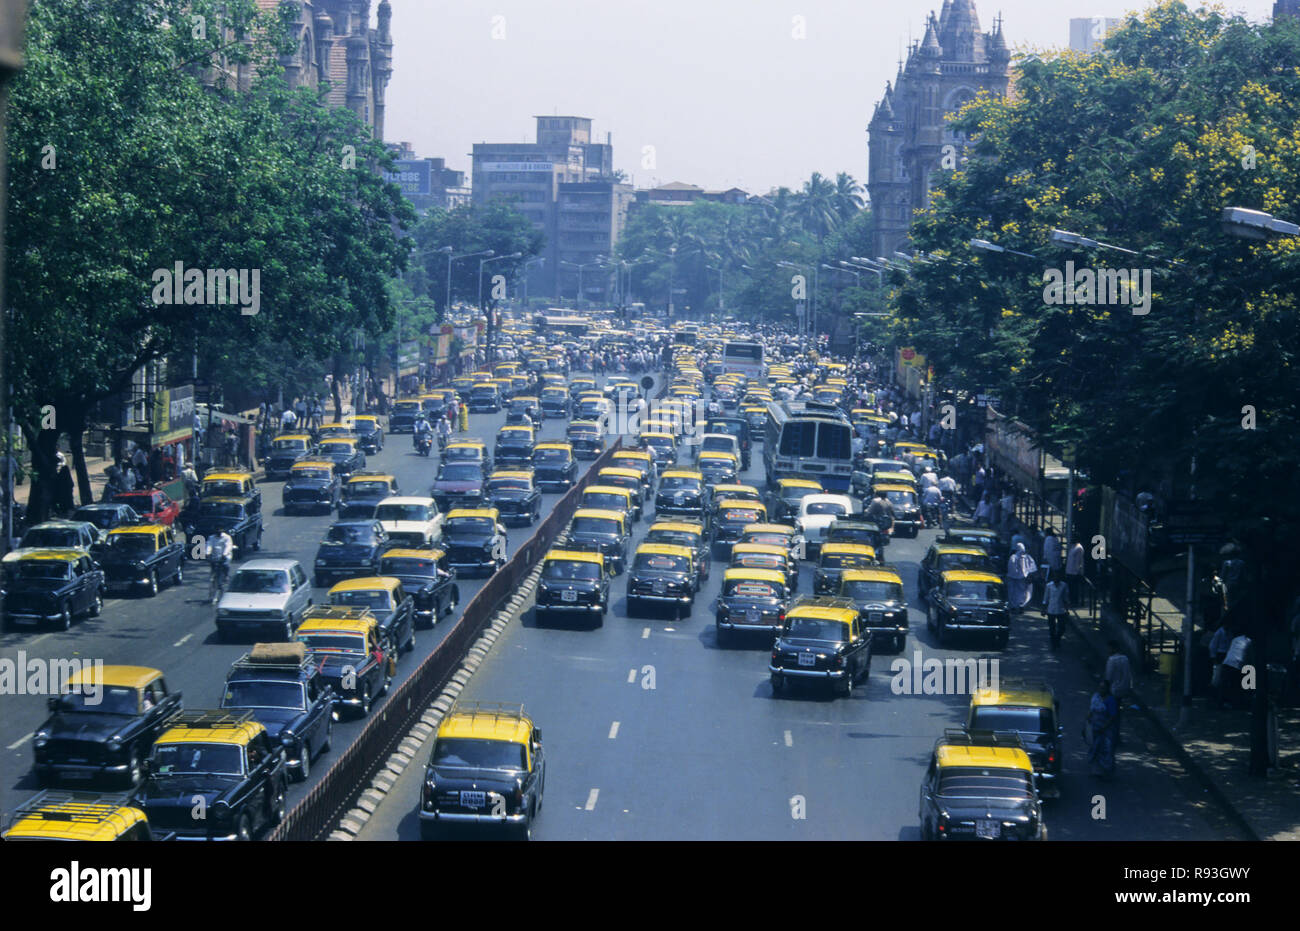 Taxis on street, bombay mumbai, maharashtra, india Stock Photo